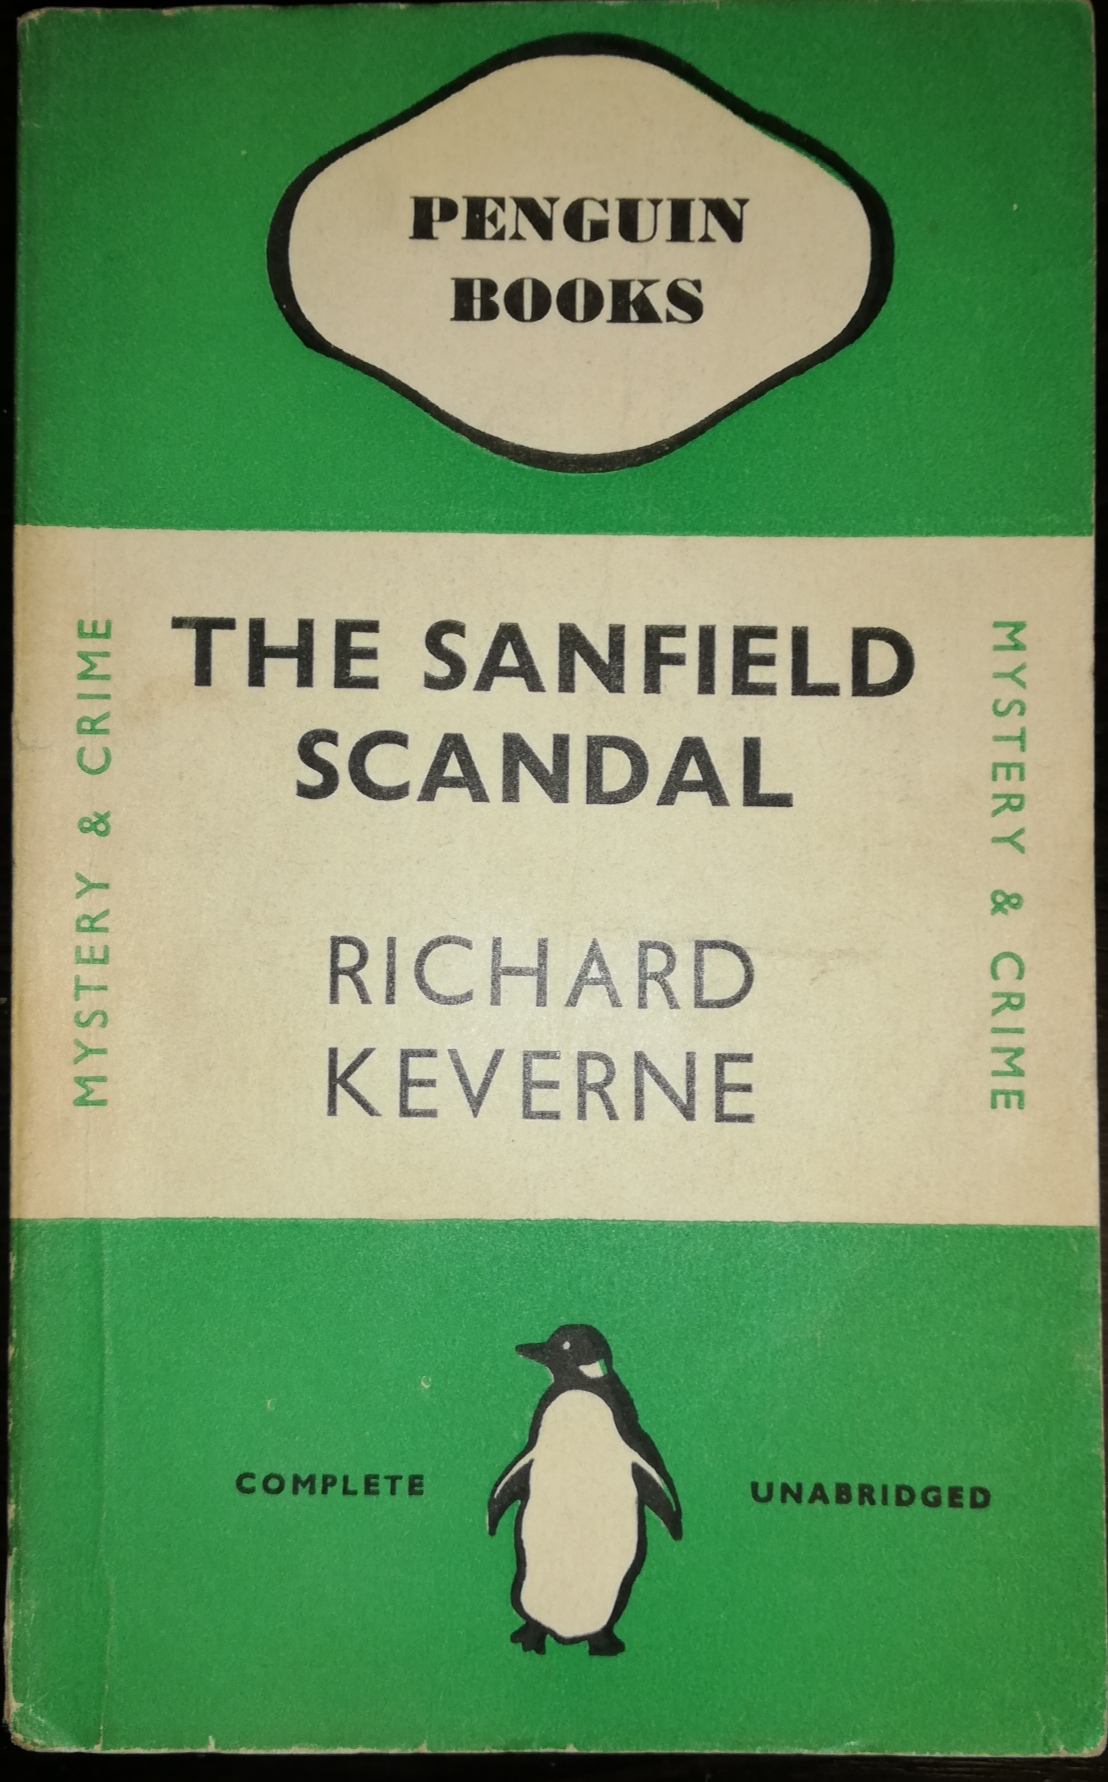 The Sandfield Scandal. Richard Keverne. Penguin Books